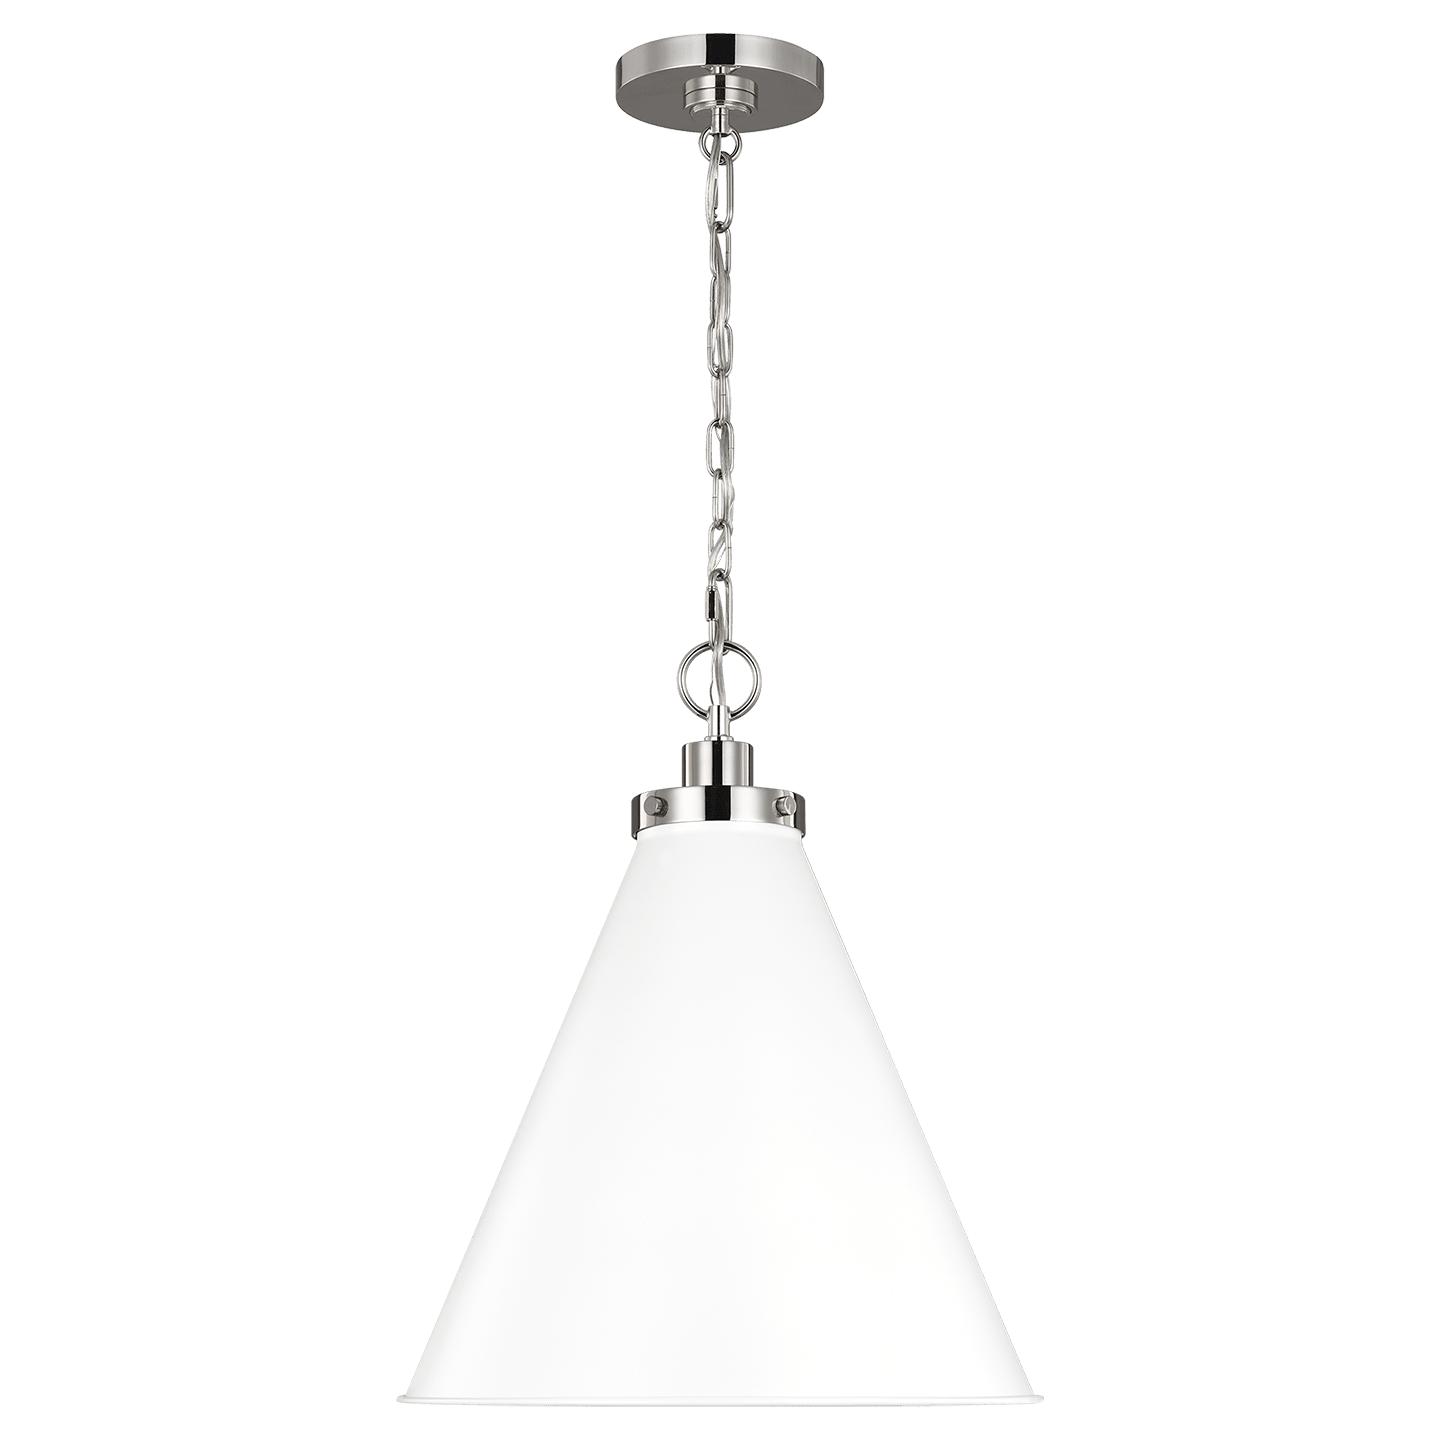 Купить Подвесной светильник Wellfleet Medium Cone Pendant в интернет-магазине roooms.ru